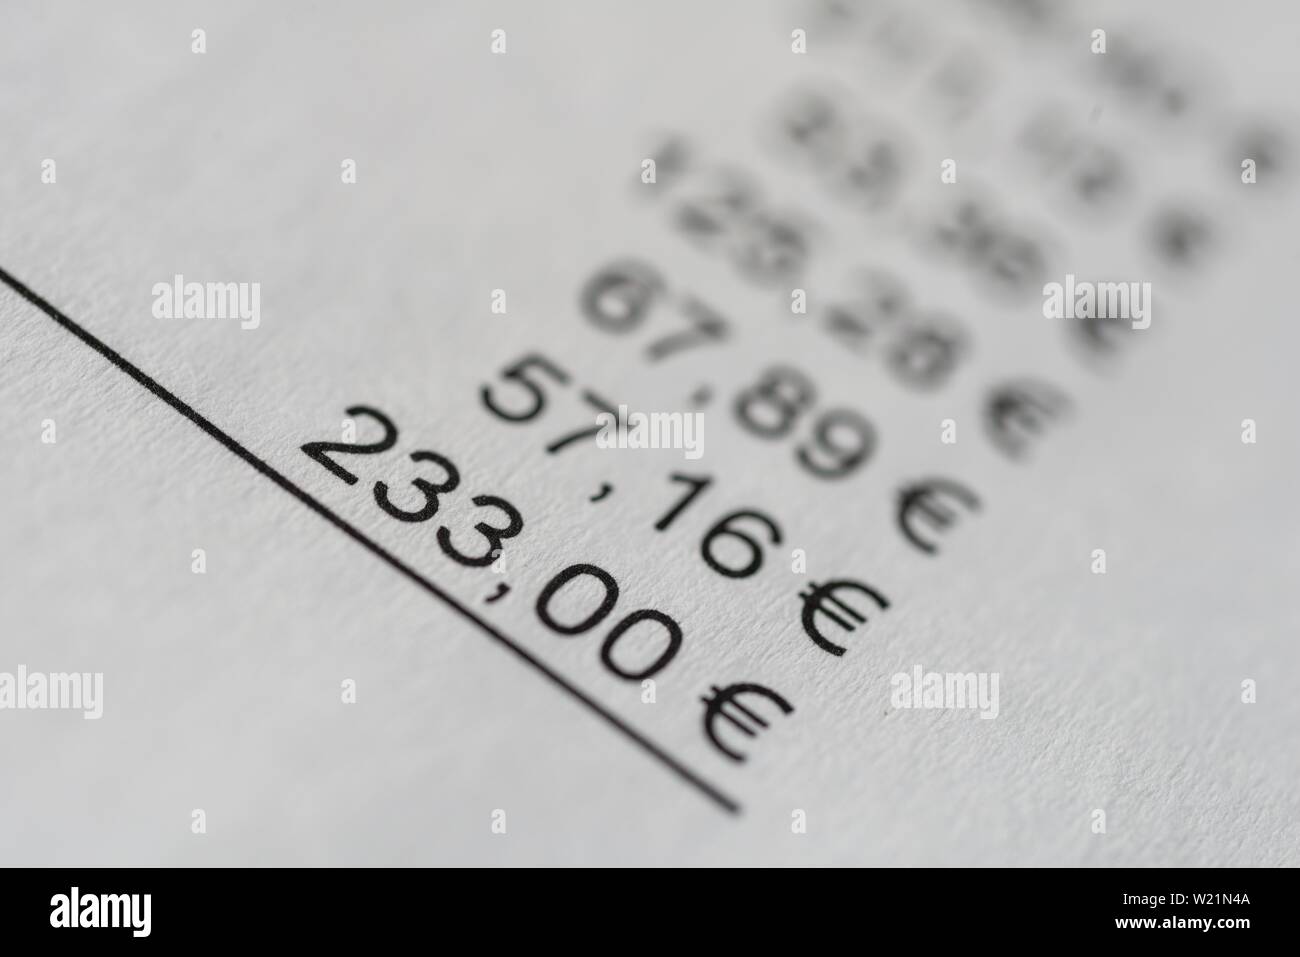 Somma di una fattura su carta, numeri e prezzi in euro Foto Stock